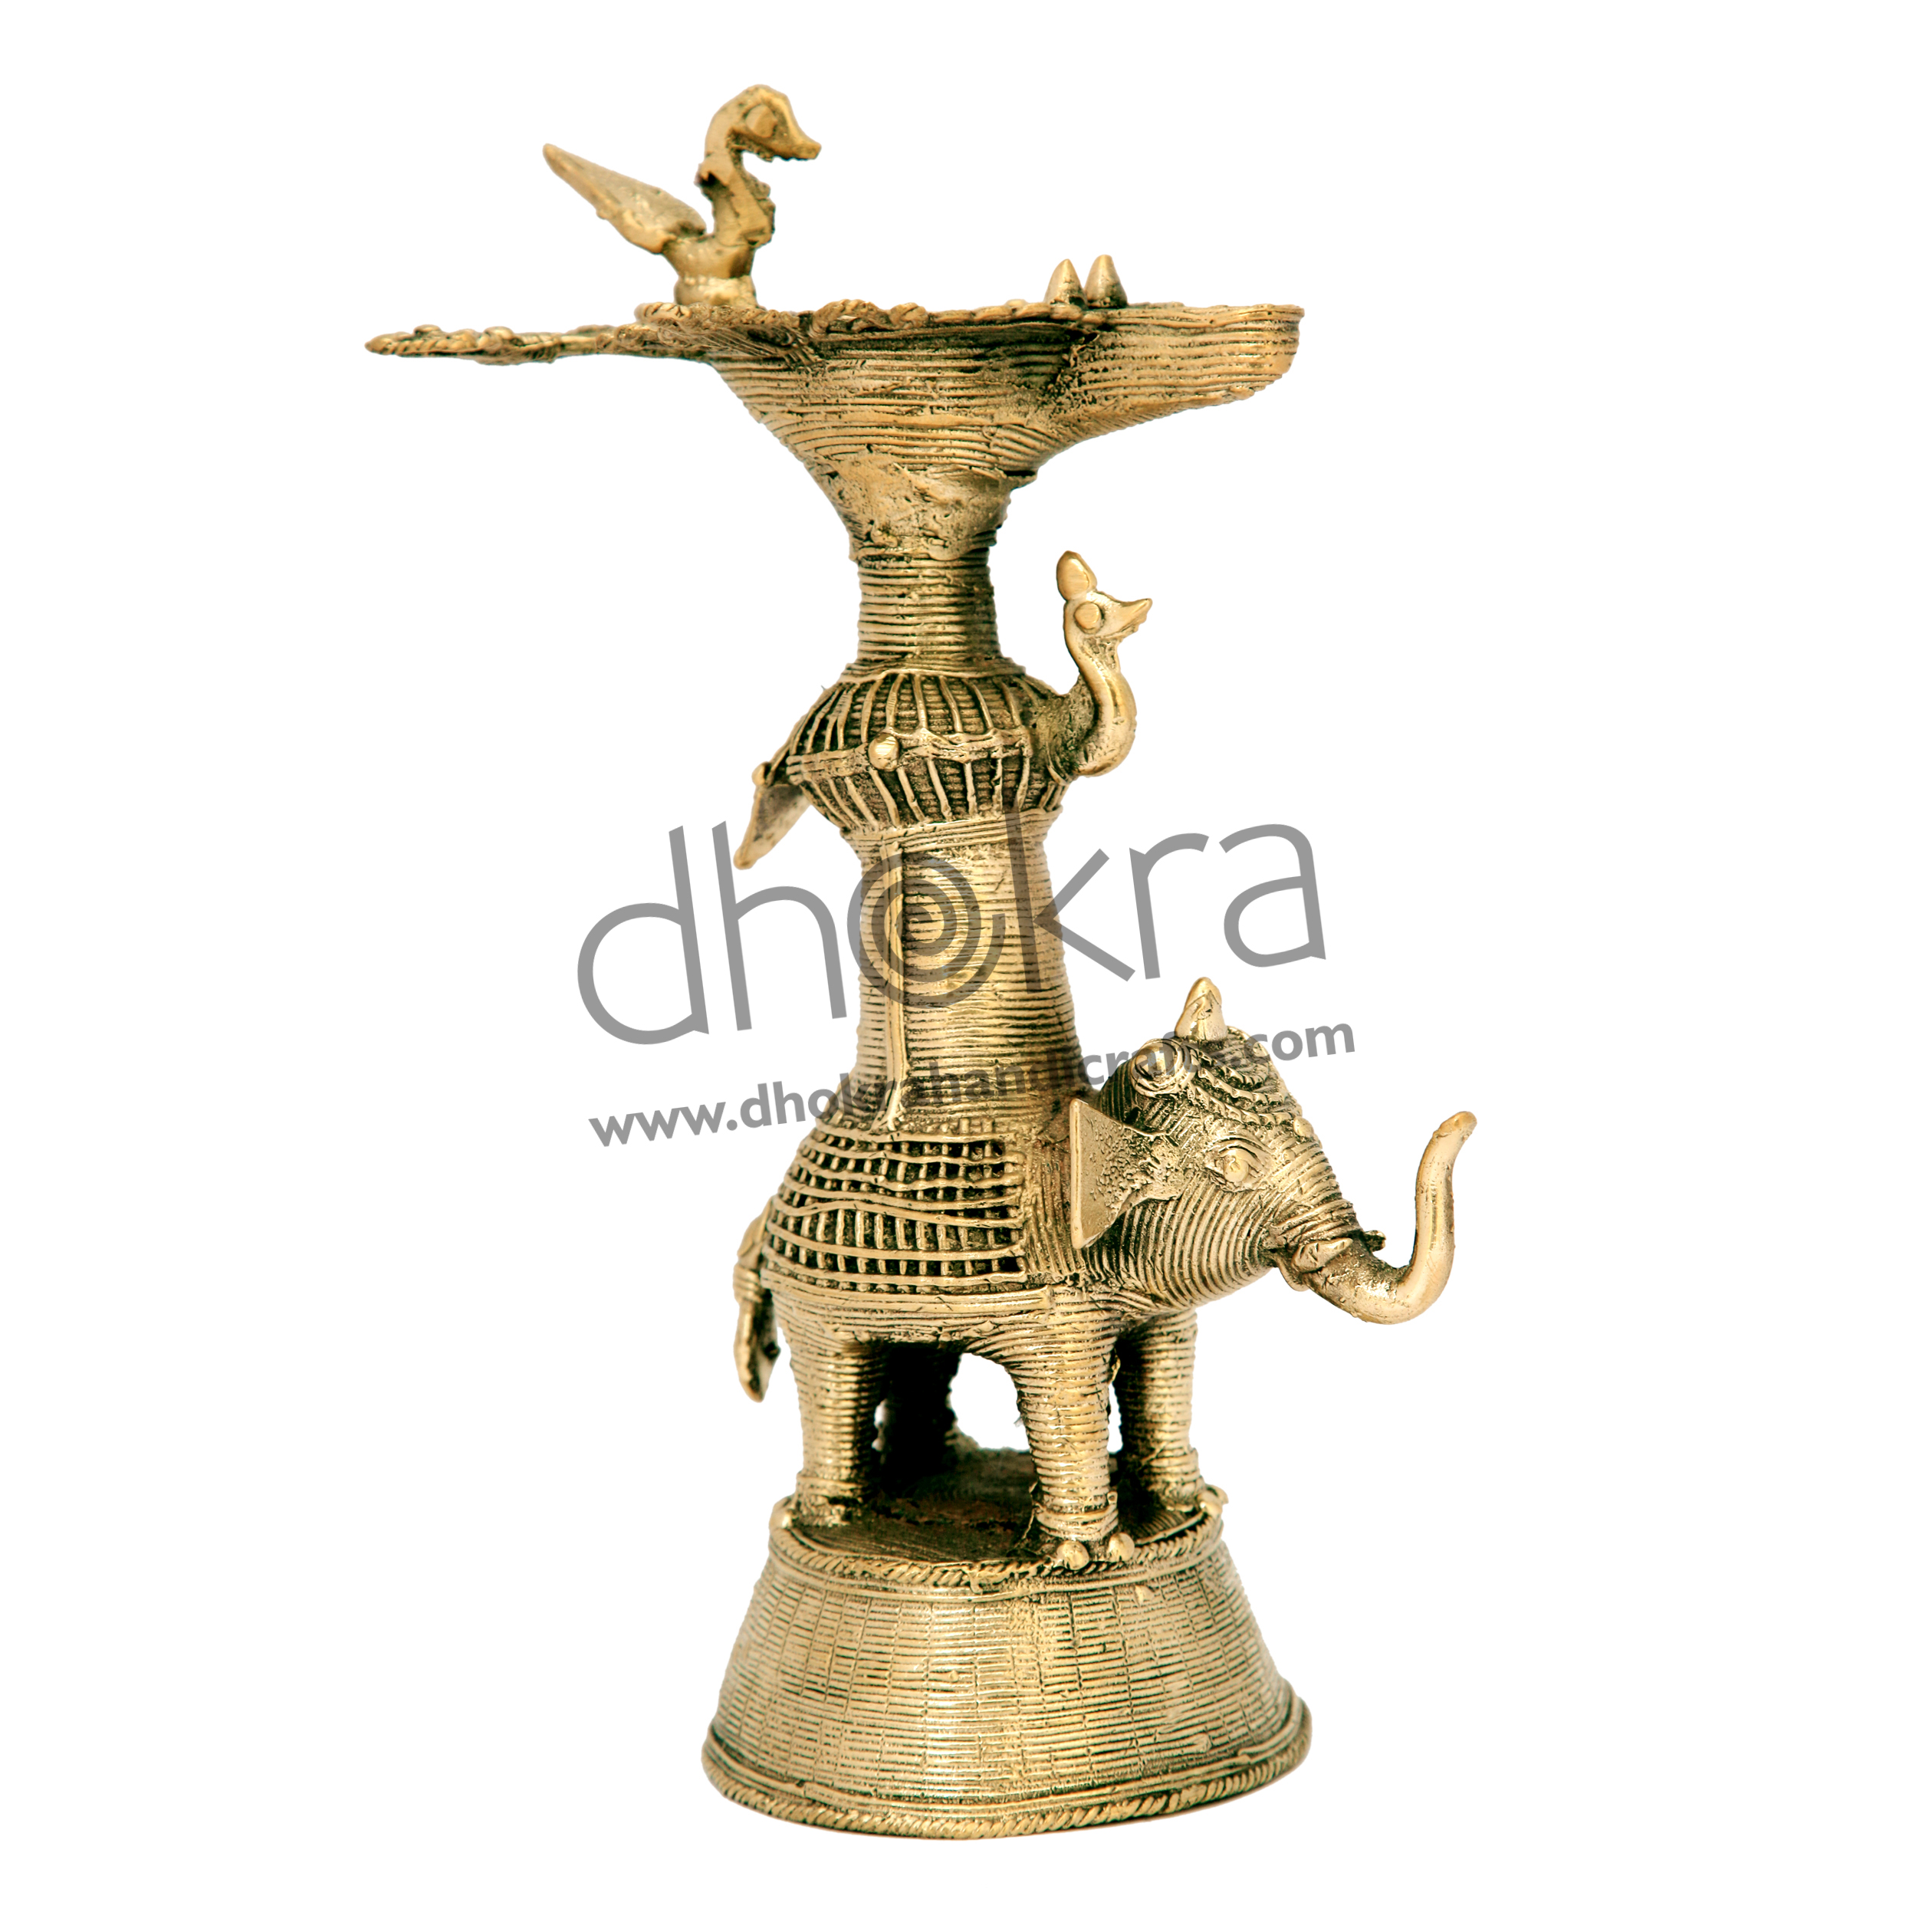 Elephant shaped Dhokra Diya Stand